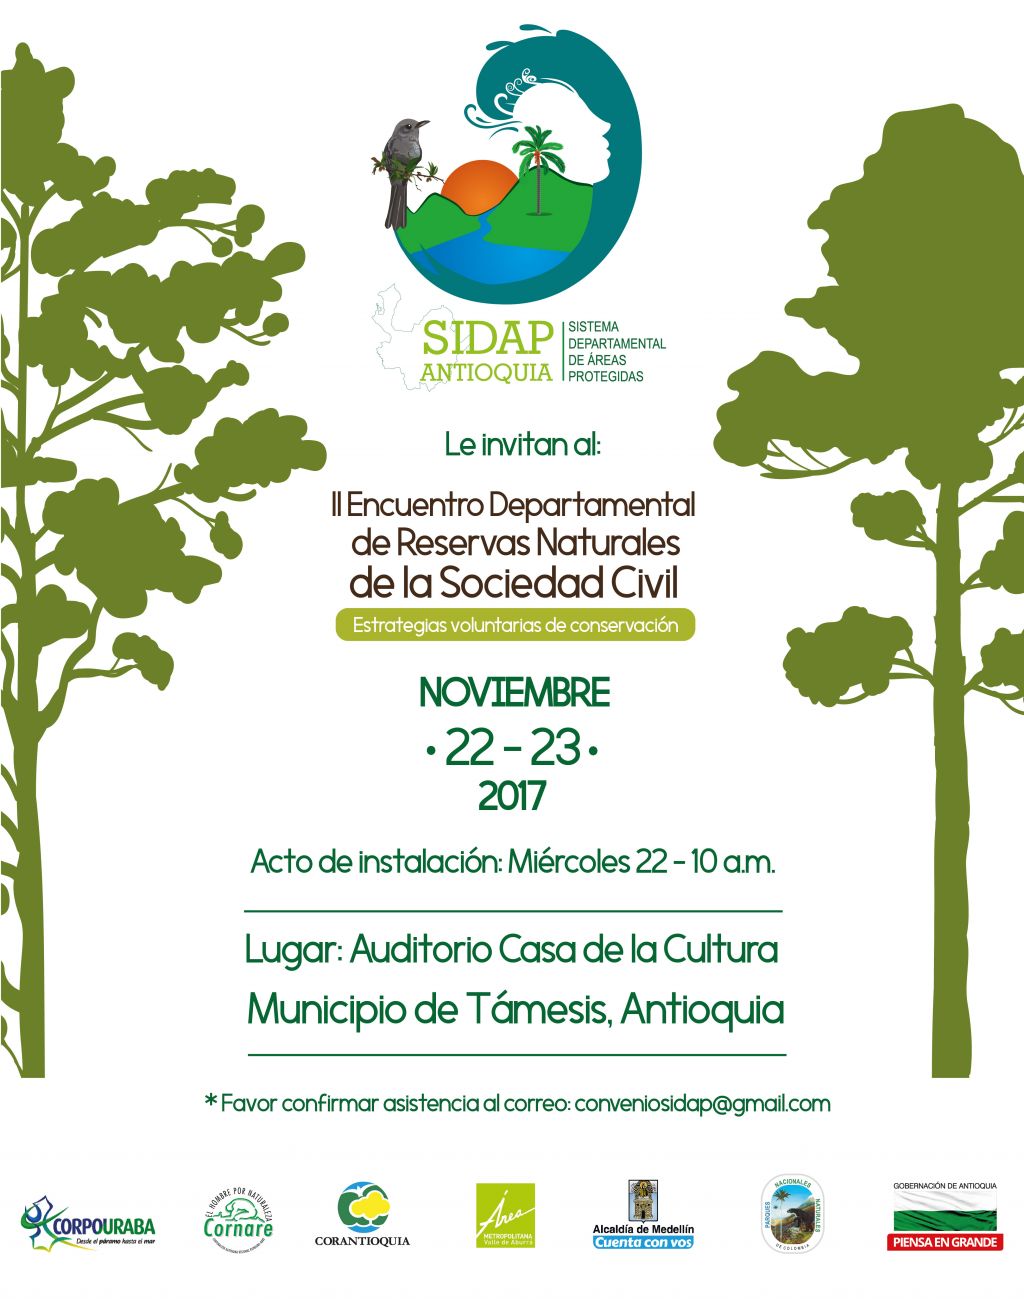 100 personas hablarán de “Estrategias Voluntarias de Conservación” para reservas naturales en Antioquia.